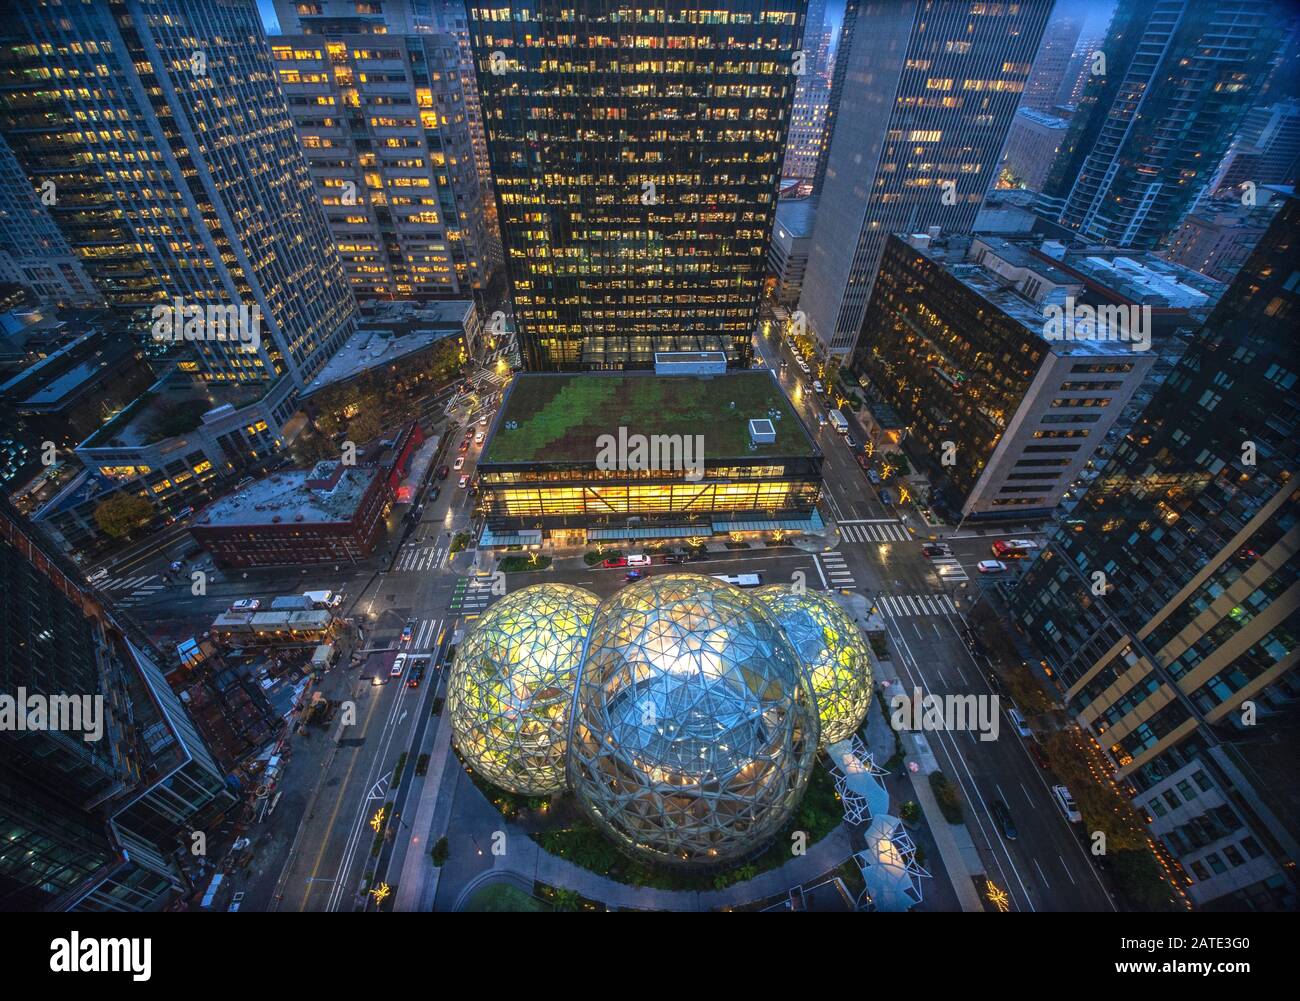 22.12.2018 : Luftbild der Amazon Sphären am Hauptsitz in Seattle und Bürotürme in der Innenstadt von Seattle, WA D.C USA Stockfoto